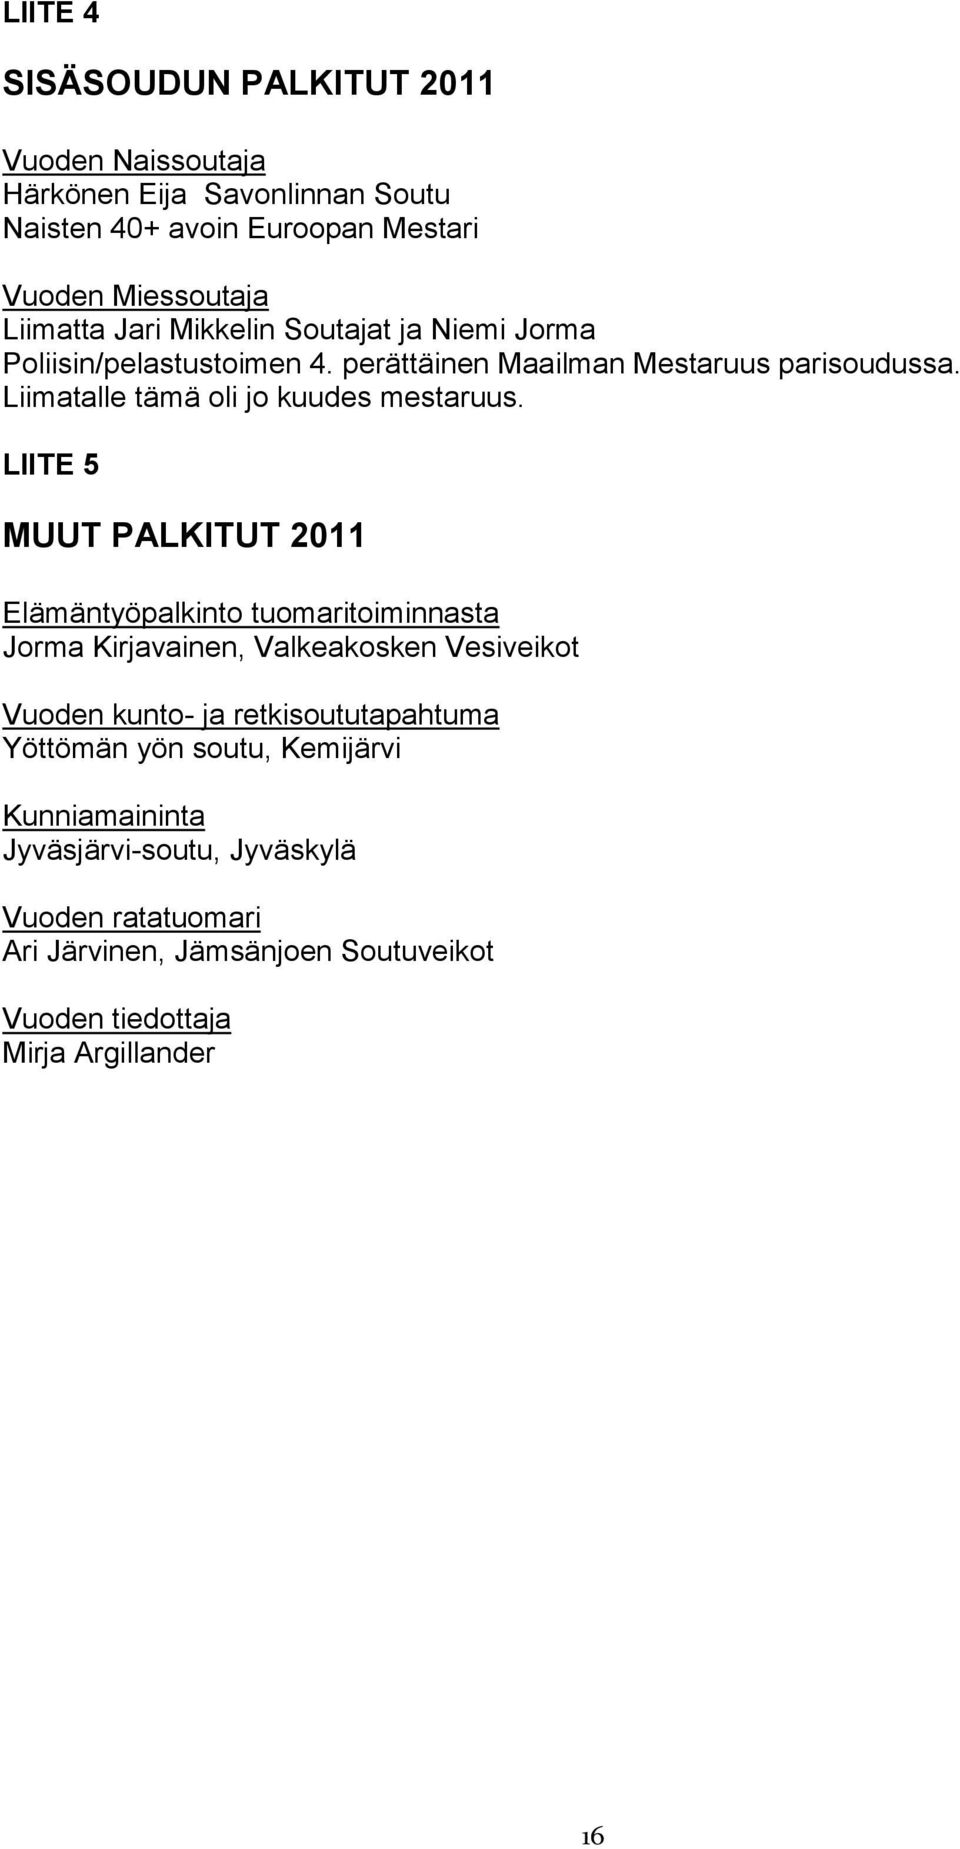 LIITE 5 MUUT PALKITUT 2011 Elämäntyöpalkinto tuomaritoiminnasta Jorma Kirjavainen, Valkeakosken Vesiveikot Vuoden kunto- ja retkisoututapahtuma Yöttömän